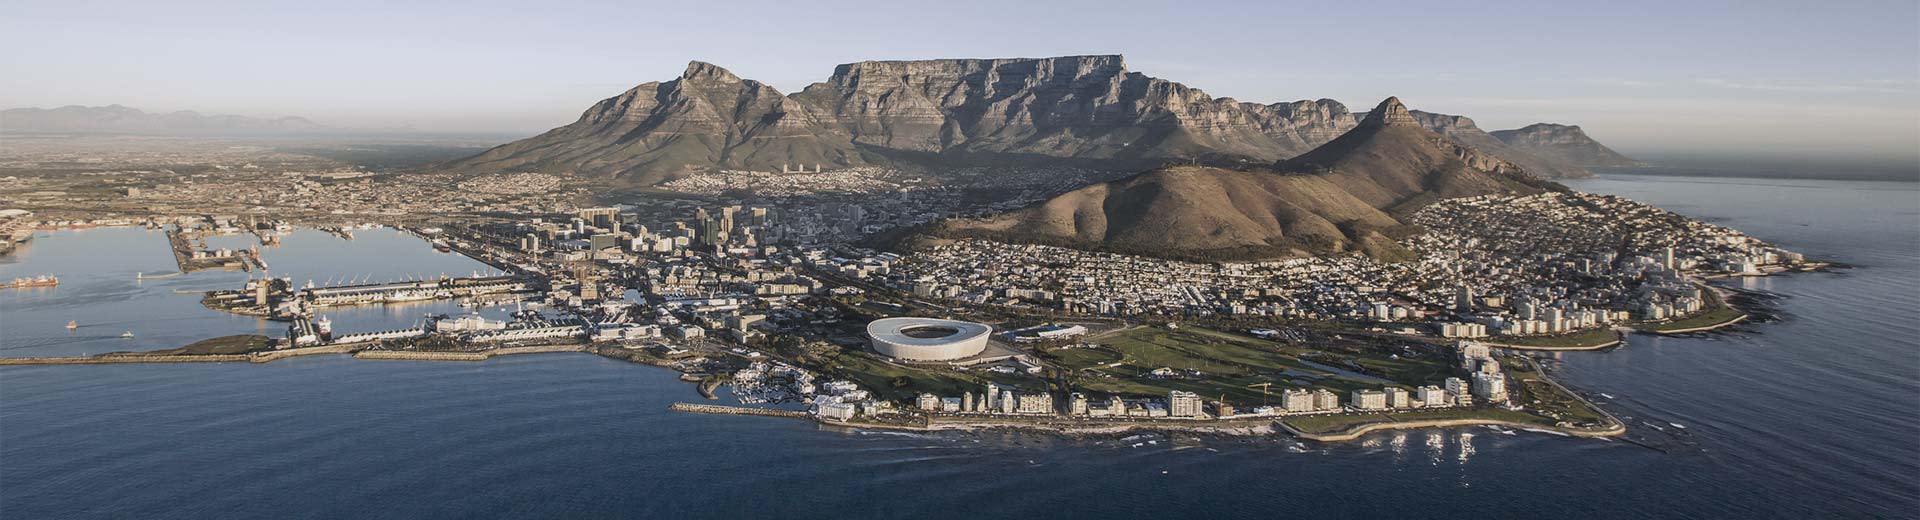 La famosa montaña de mesa detrás de la extensa metrópolis de Ciudad del Cabo.